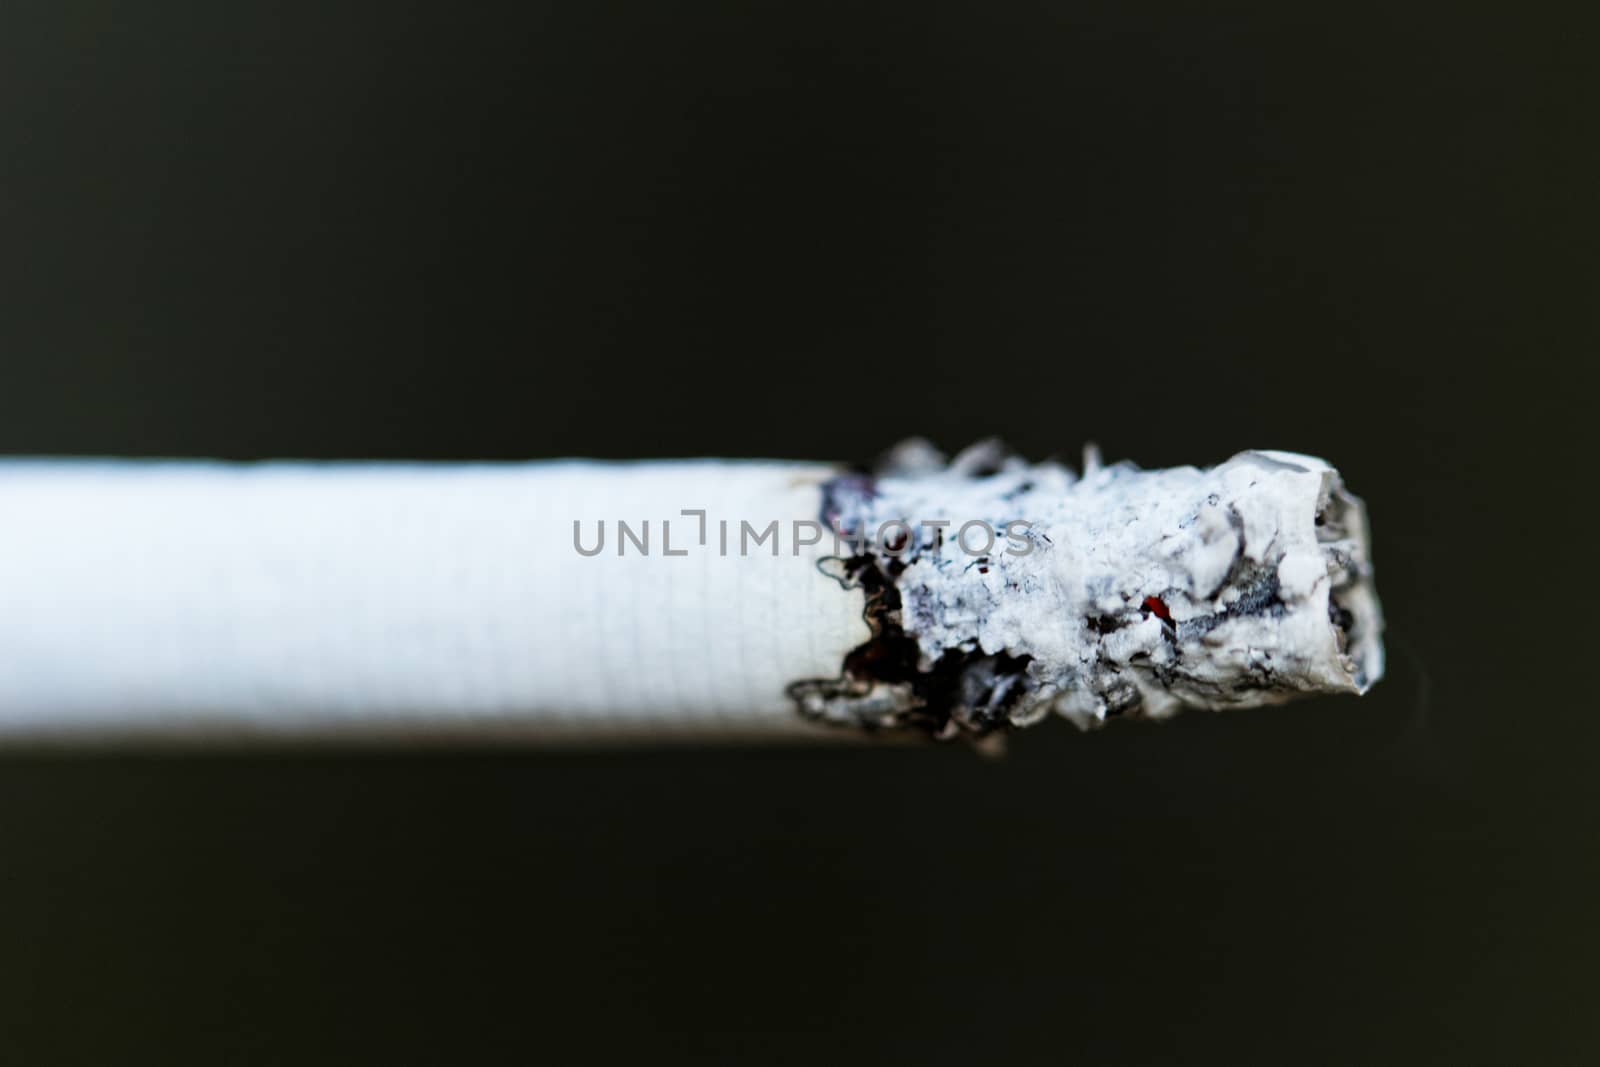 smoking a cigarette by NagyDodo